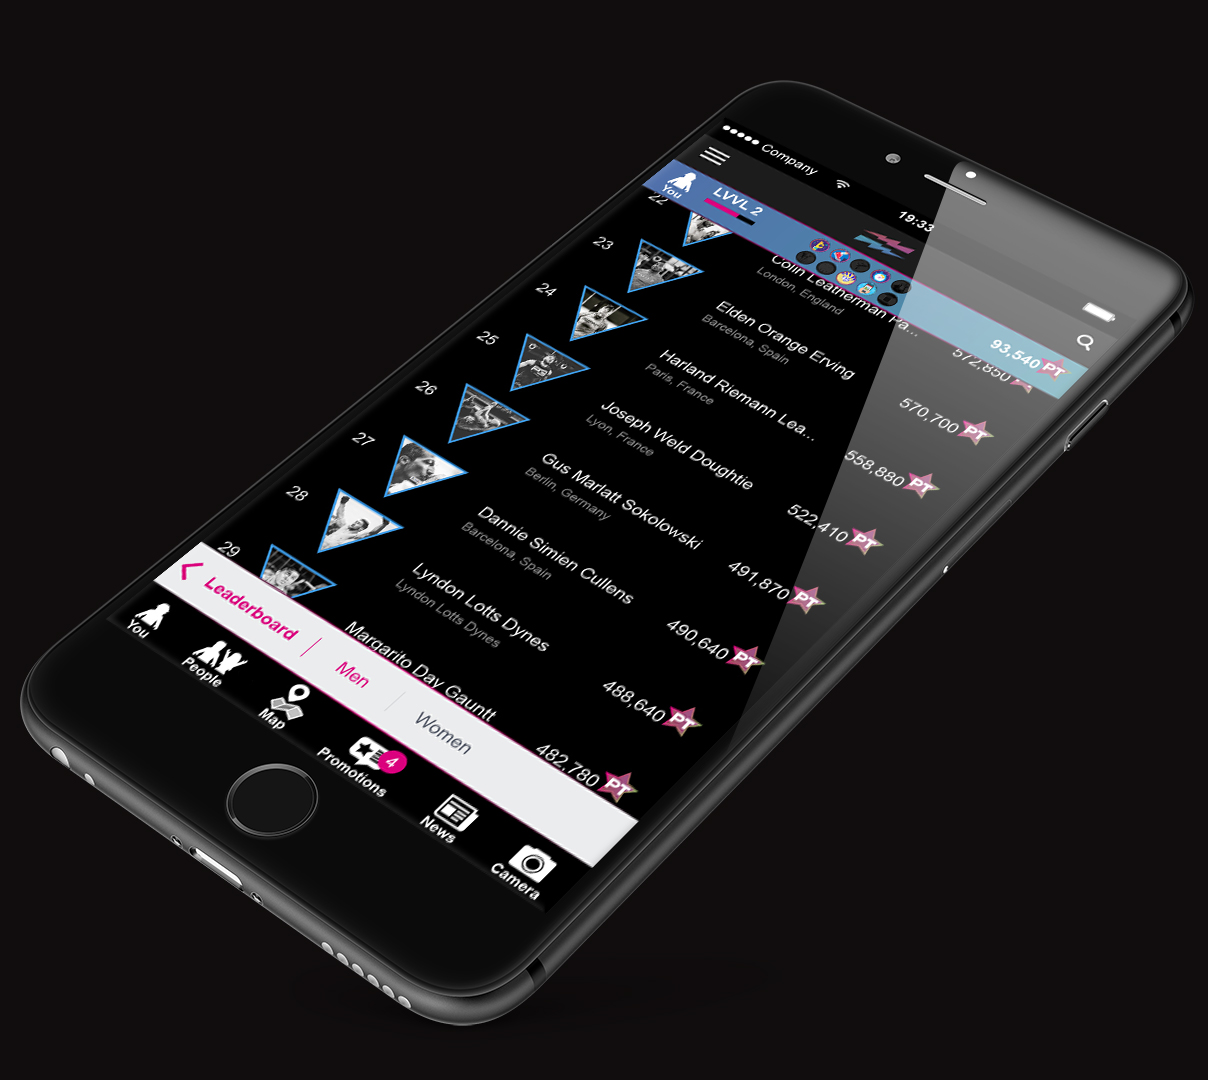 LEVVEL iPhone_Plus_app_Leaderboard2.jpg